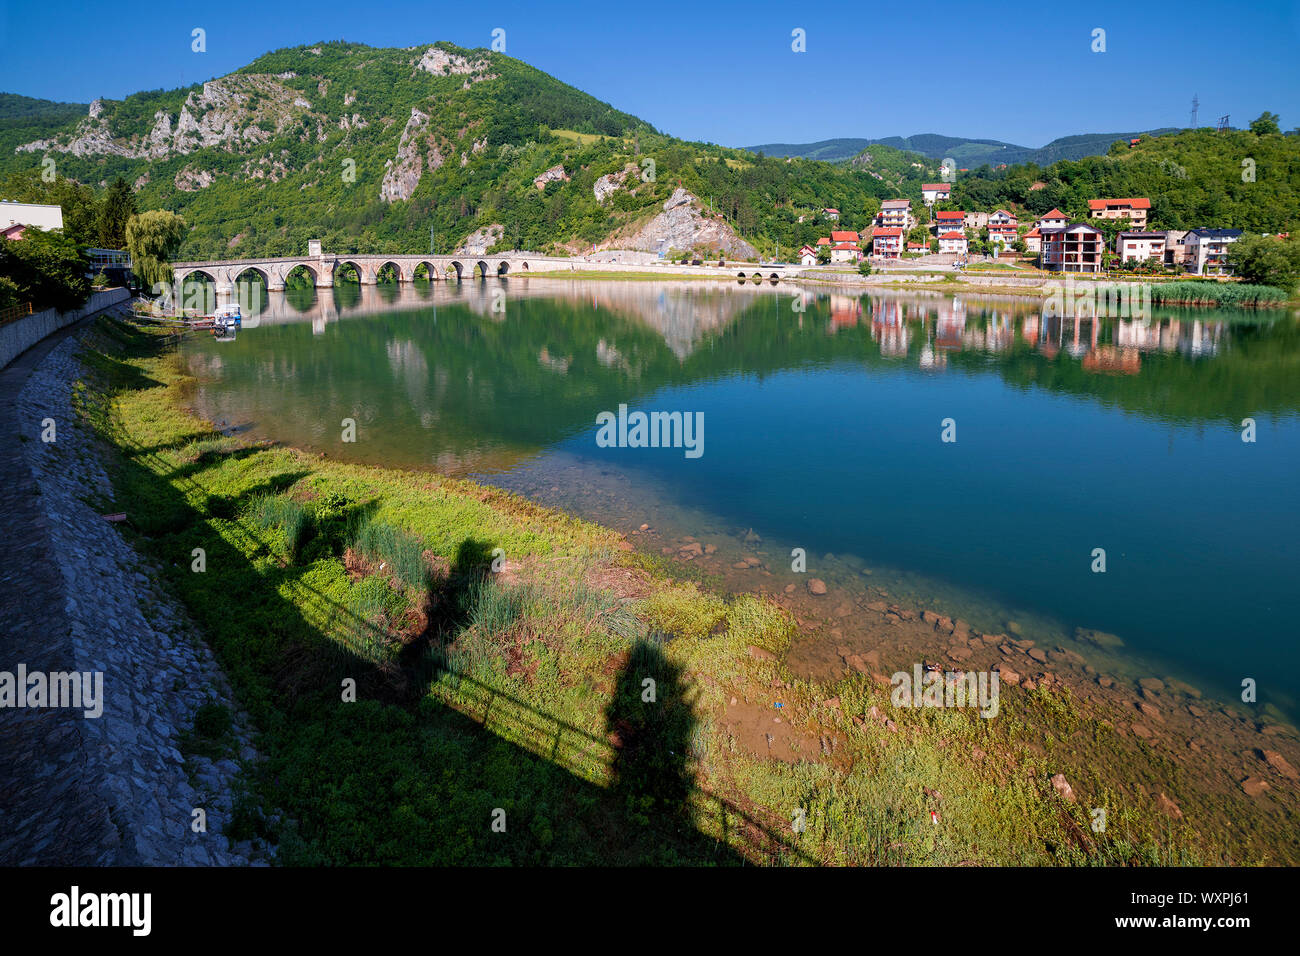 Le Vieux Pont, Visegrad, la Republika Srpska, Bosnie-Herzégovine Banque D'Images